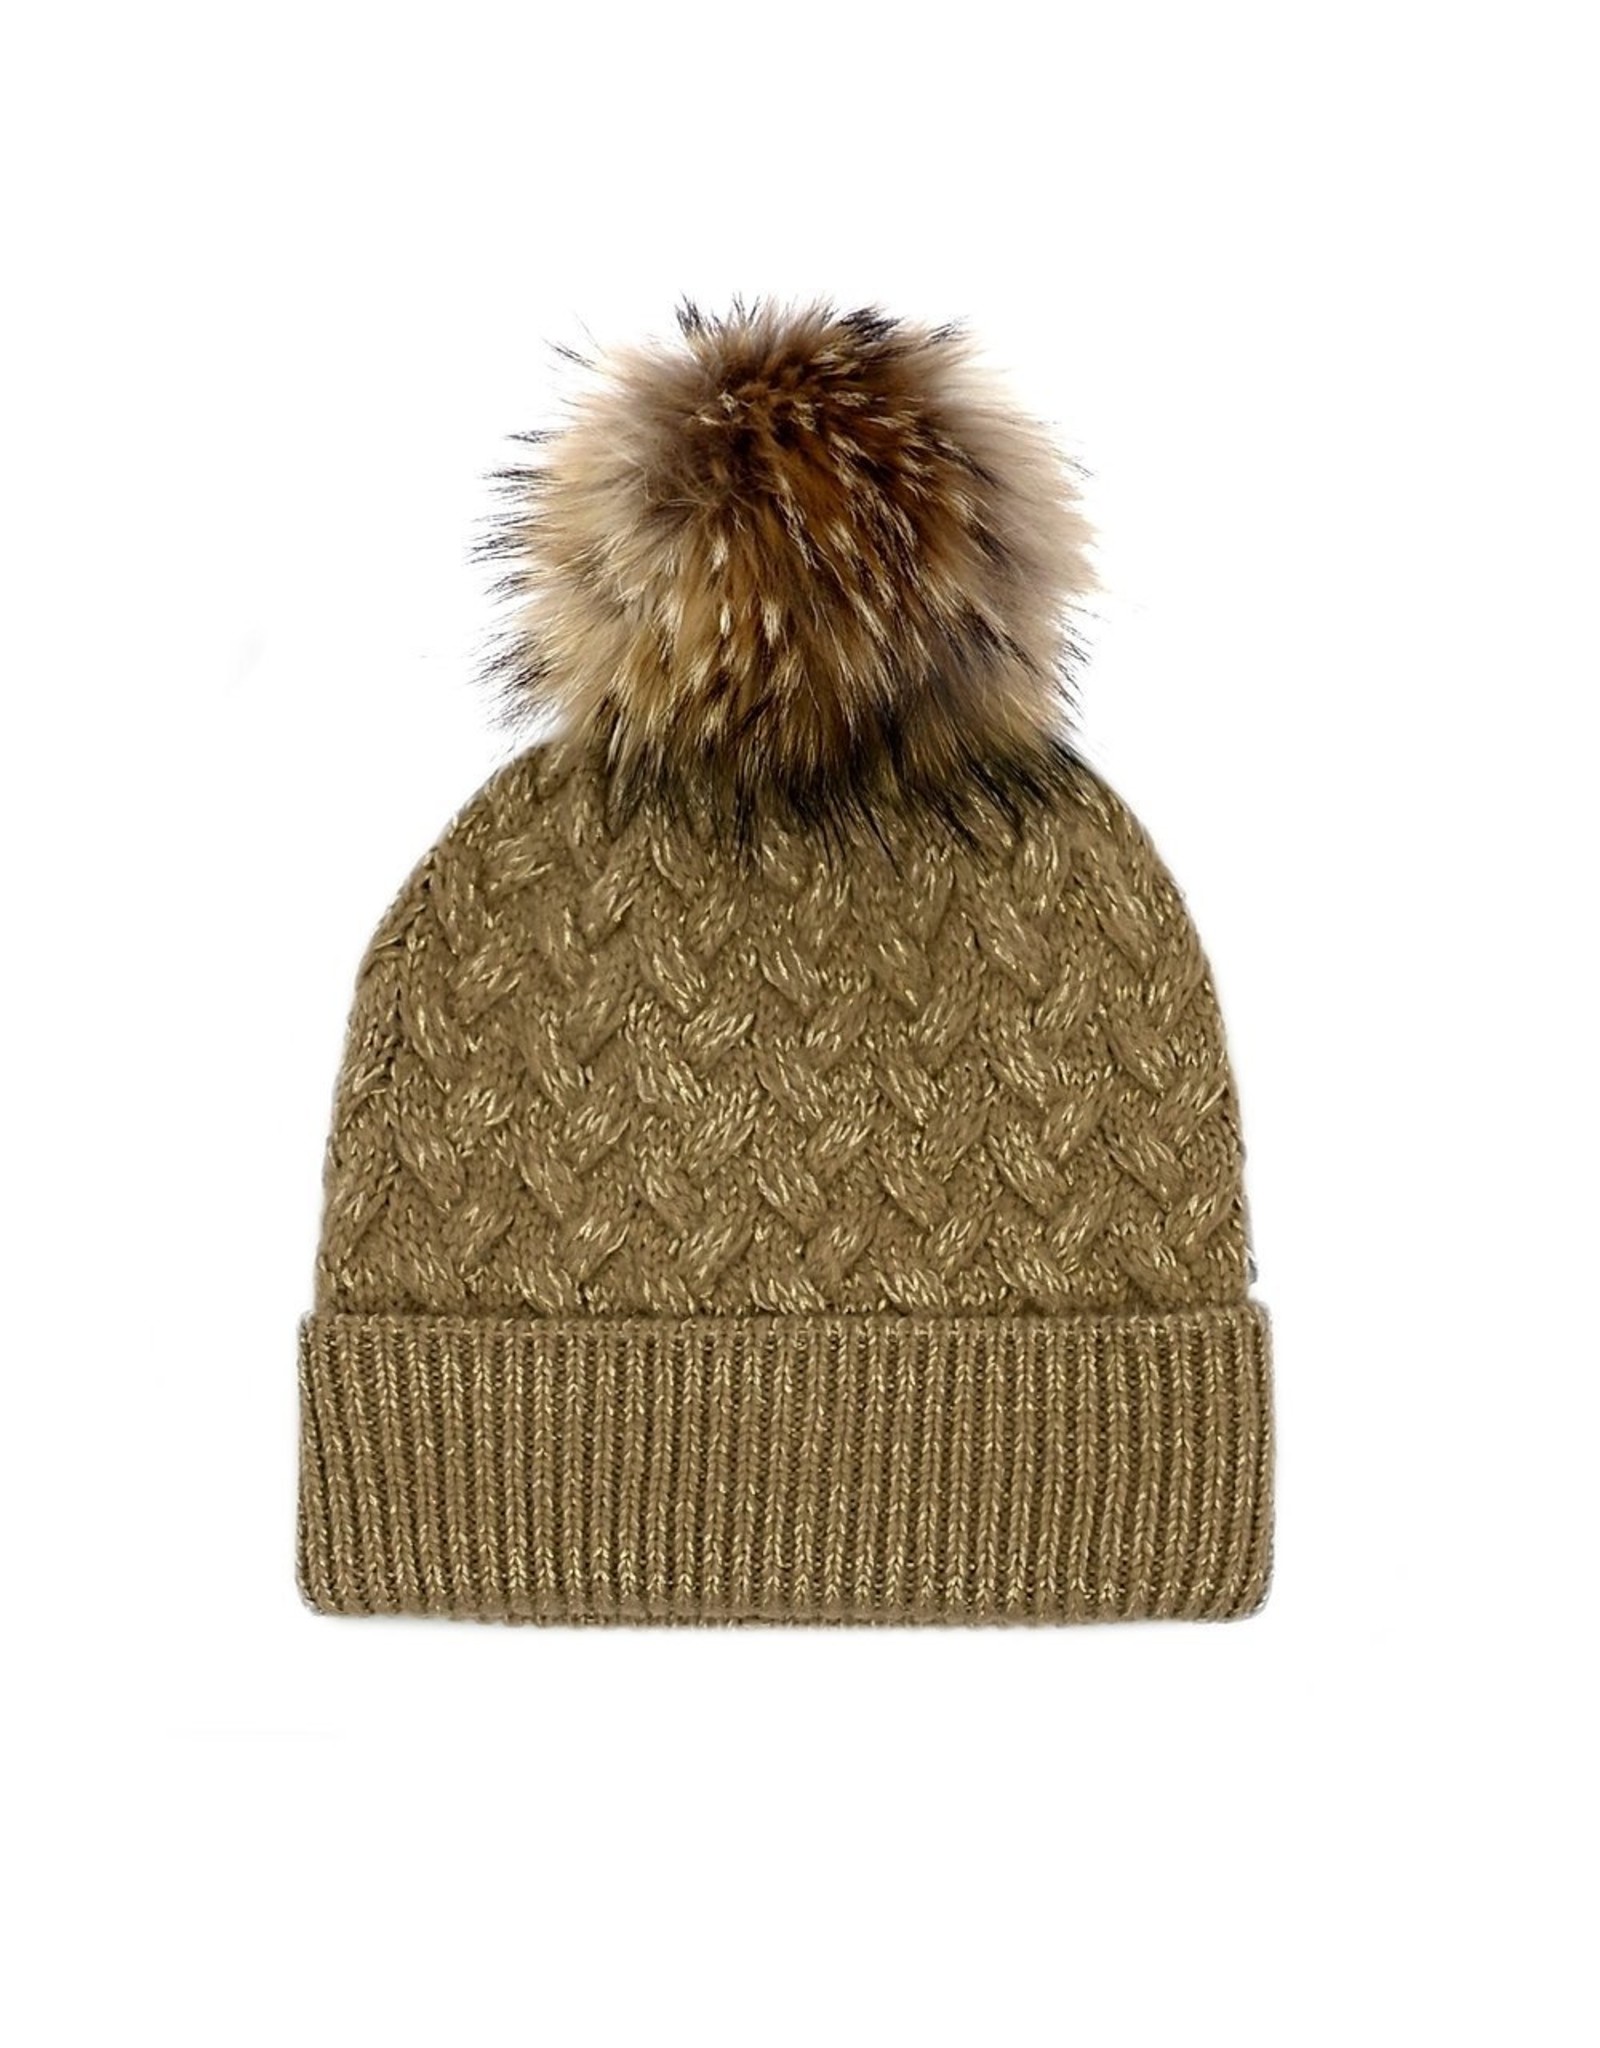 Braided Knit Hat with Fox Fur Pom